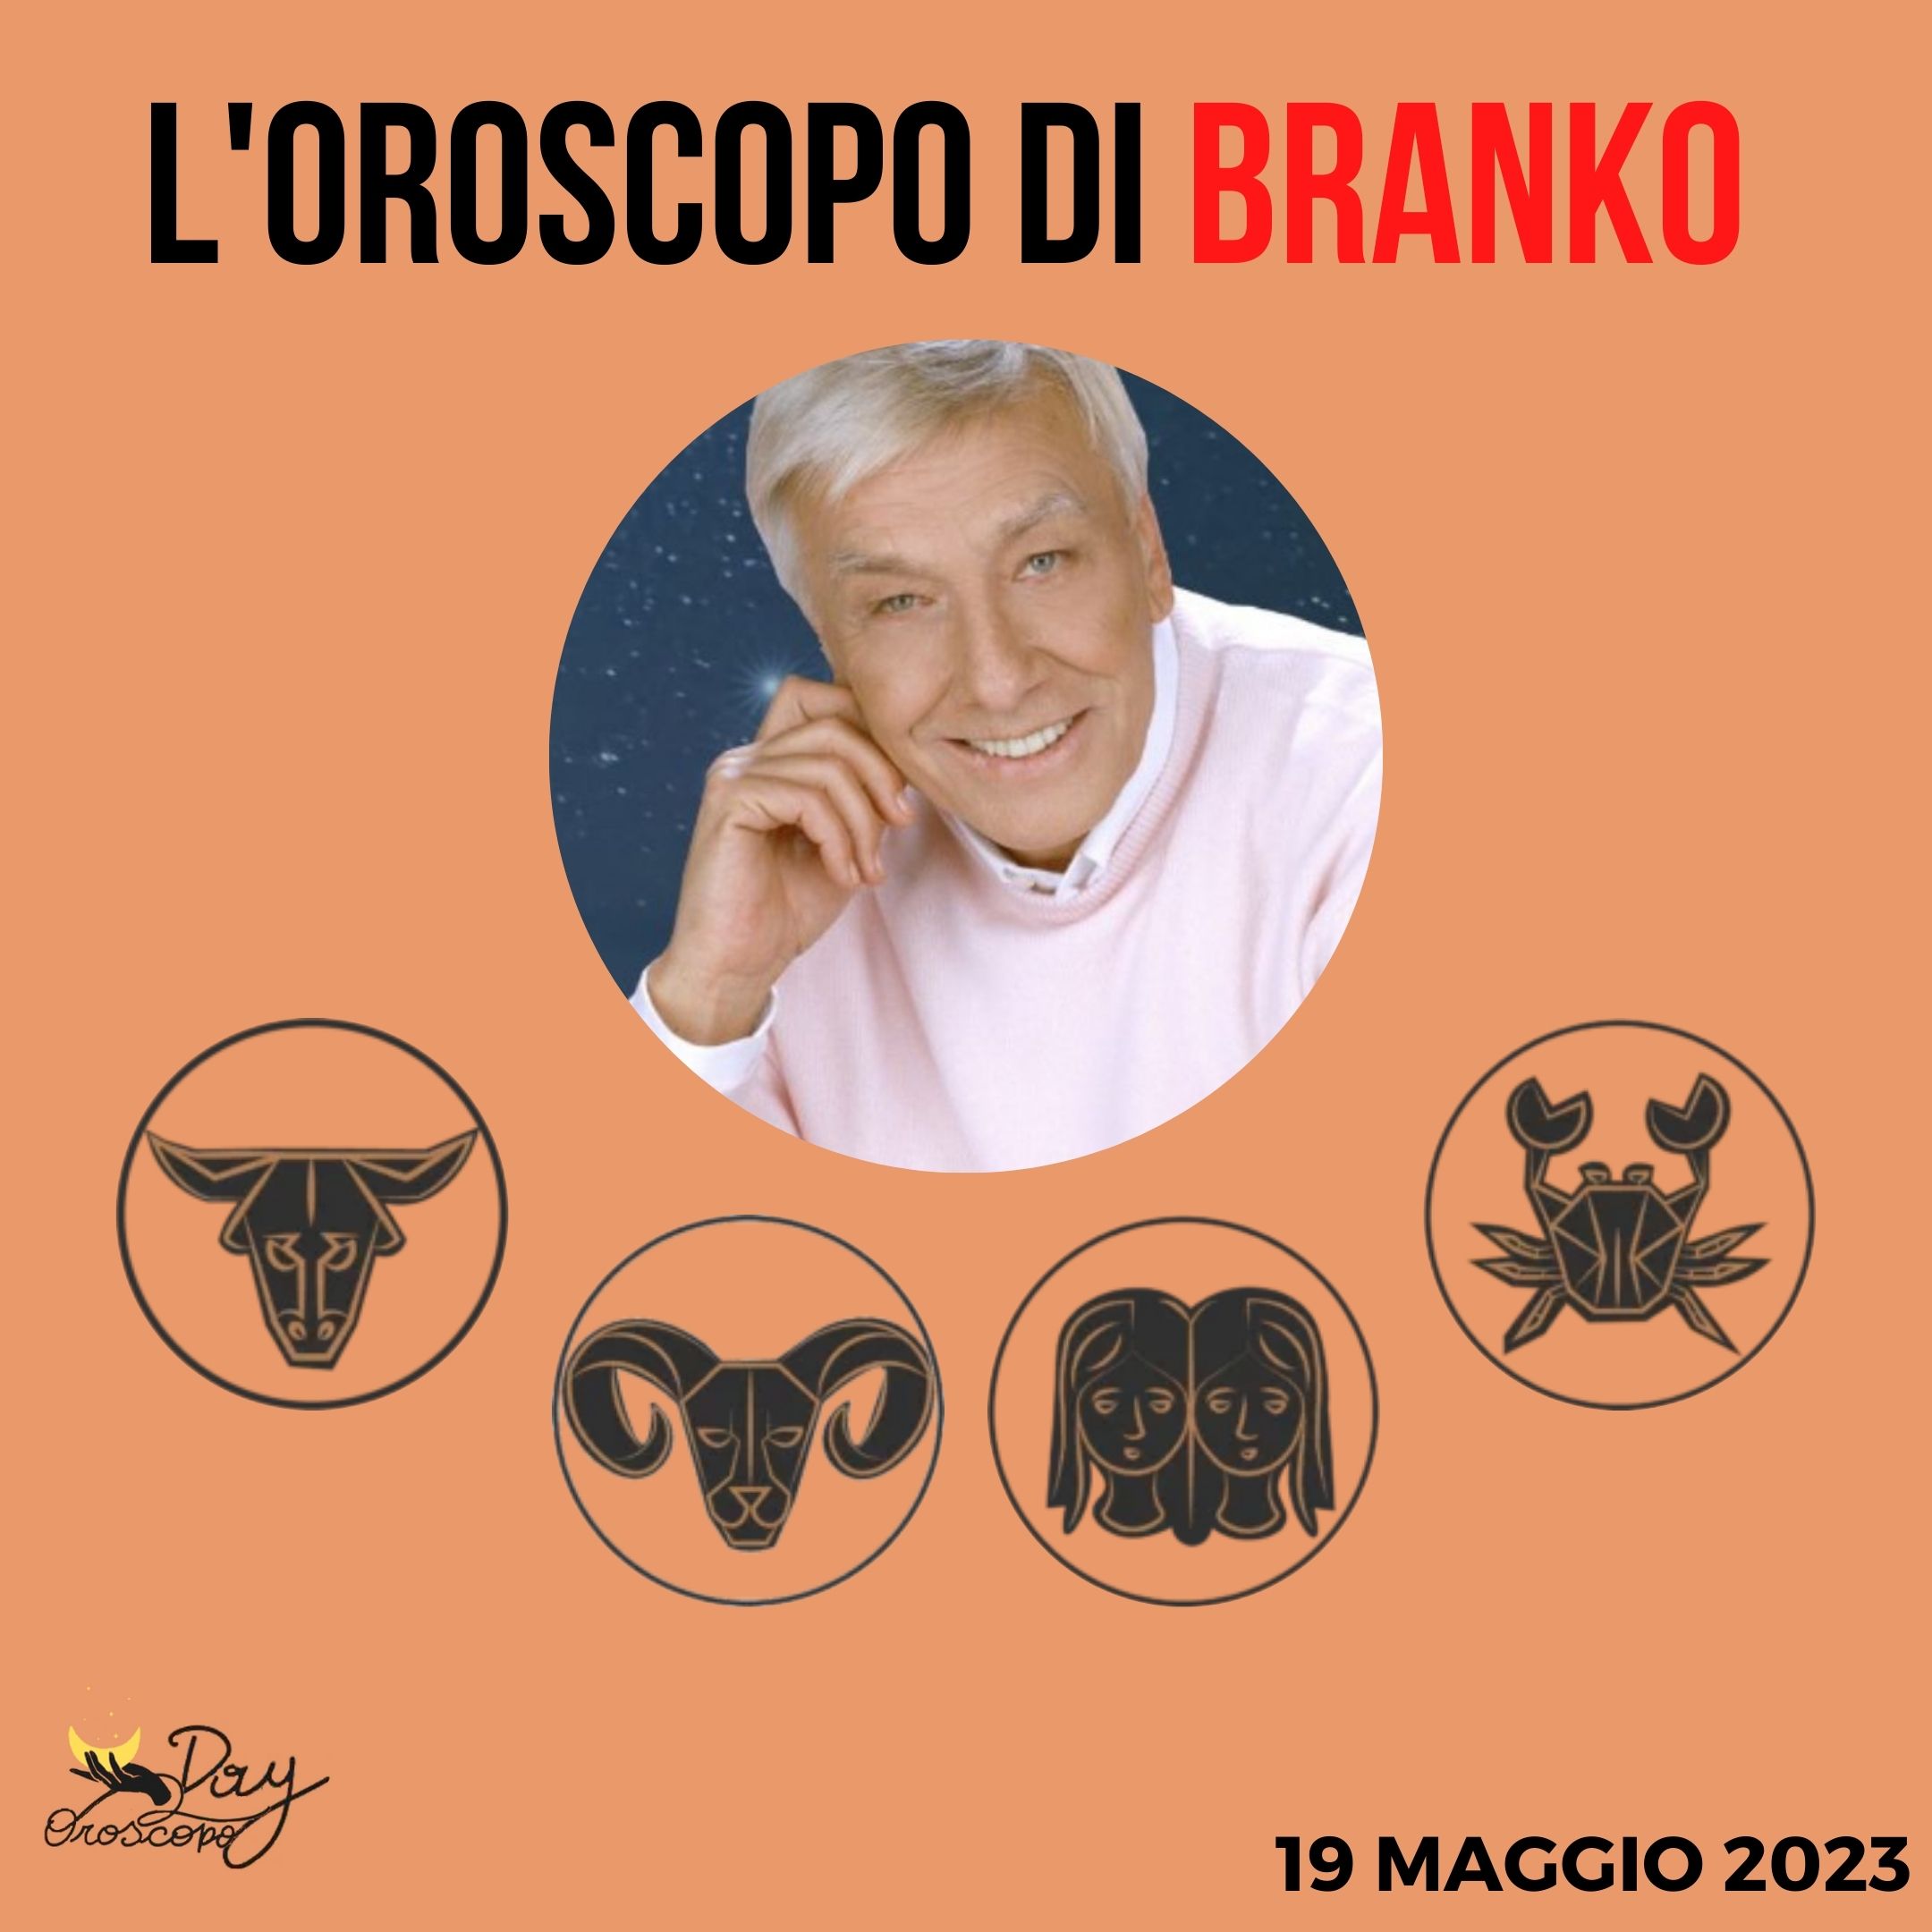 Oroscopo oggi domani Branko 19 maggio Toro Ariete Gemelli Cancro